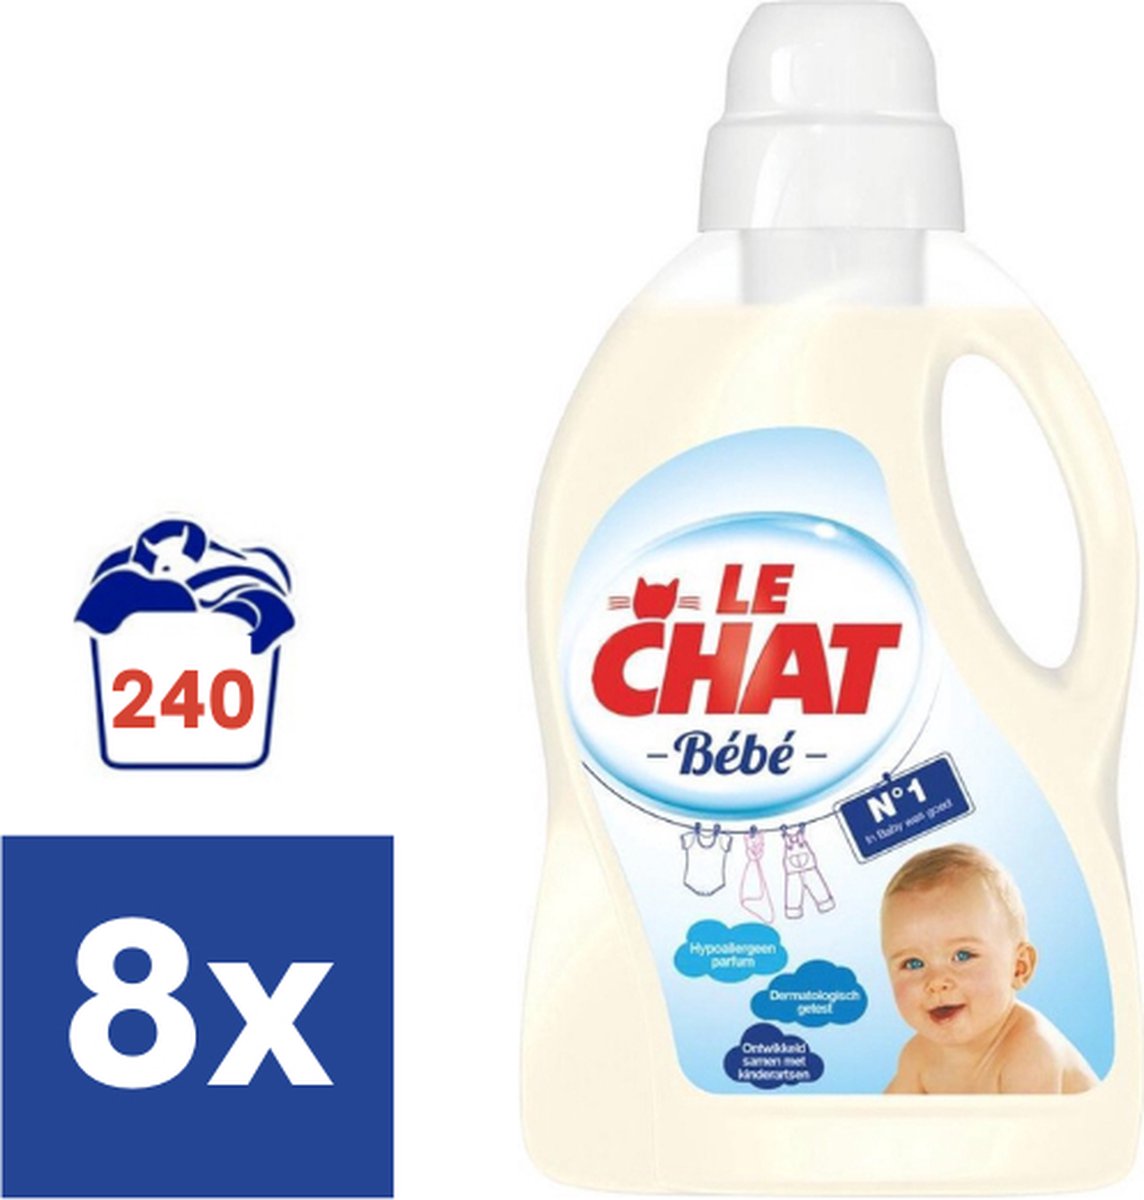 Le Chat Bébé Gel - Détergent liquide - Bébé - 240 lavages | bol.com